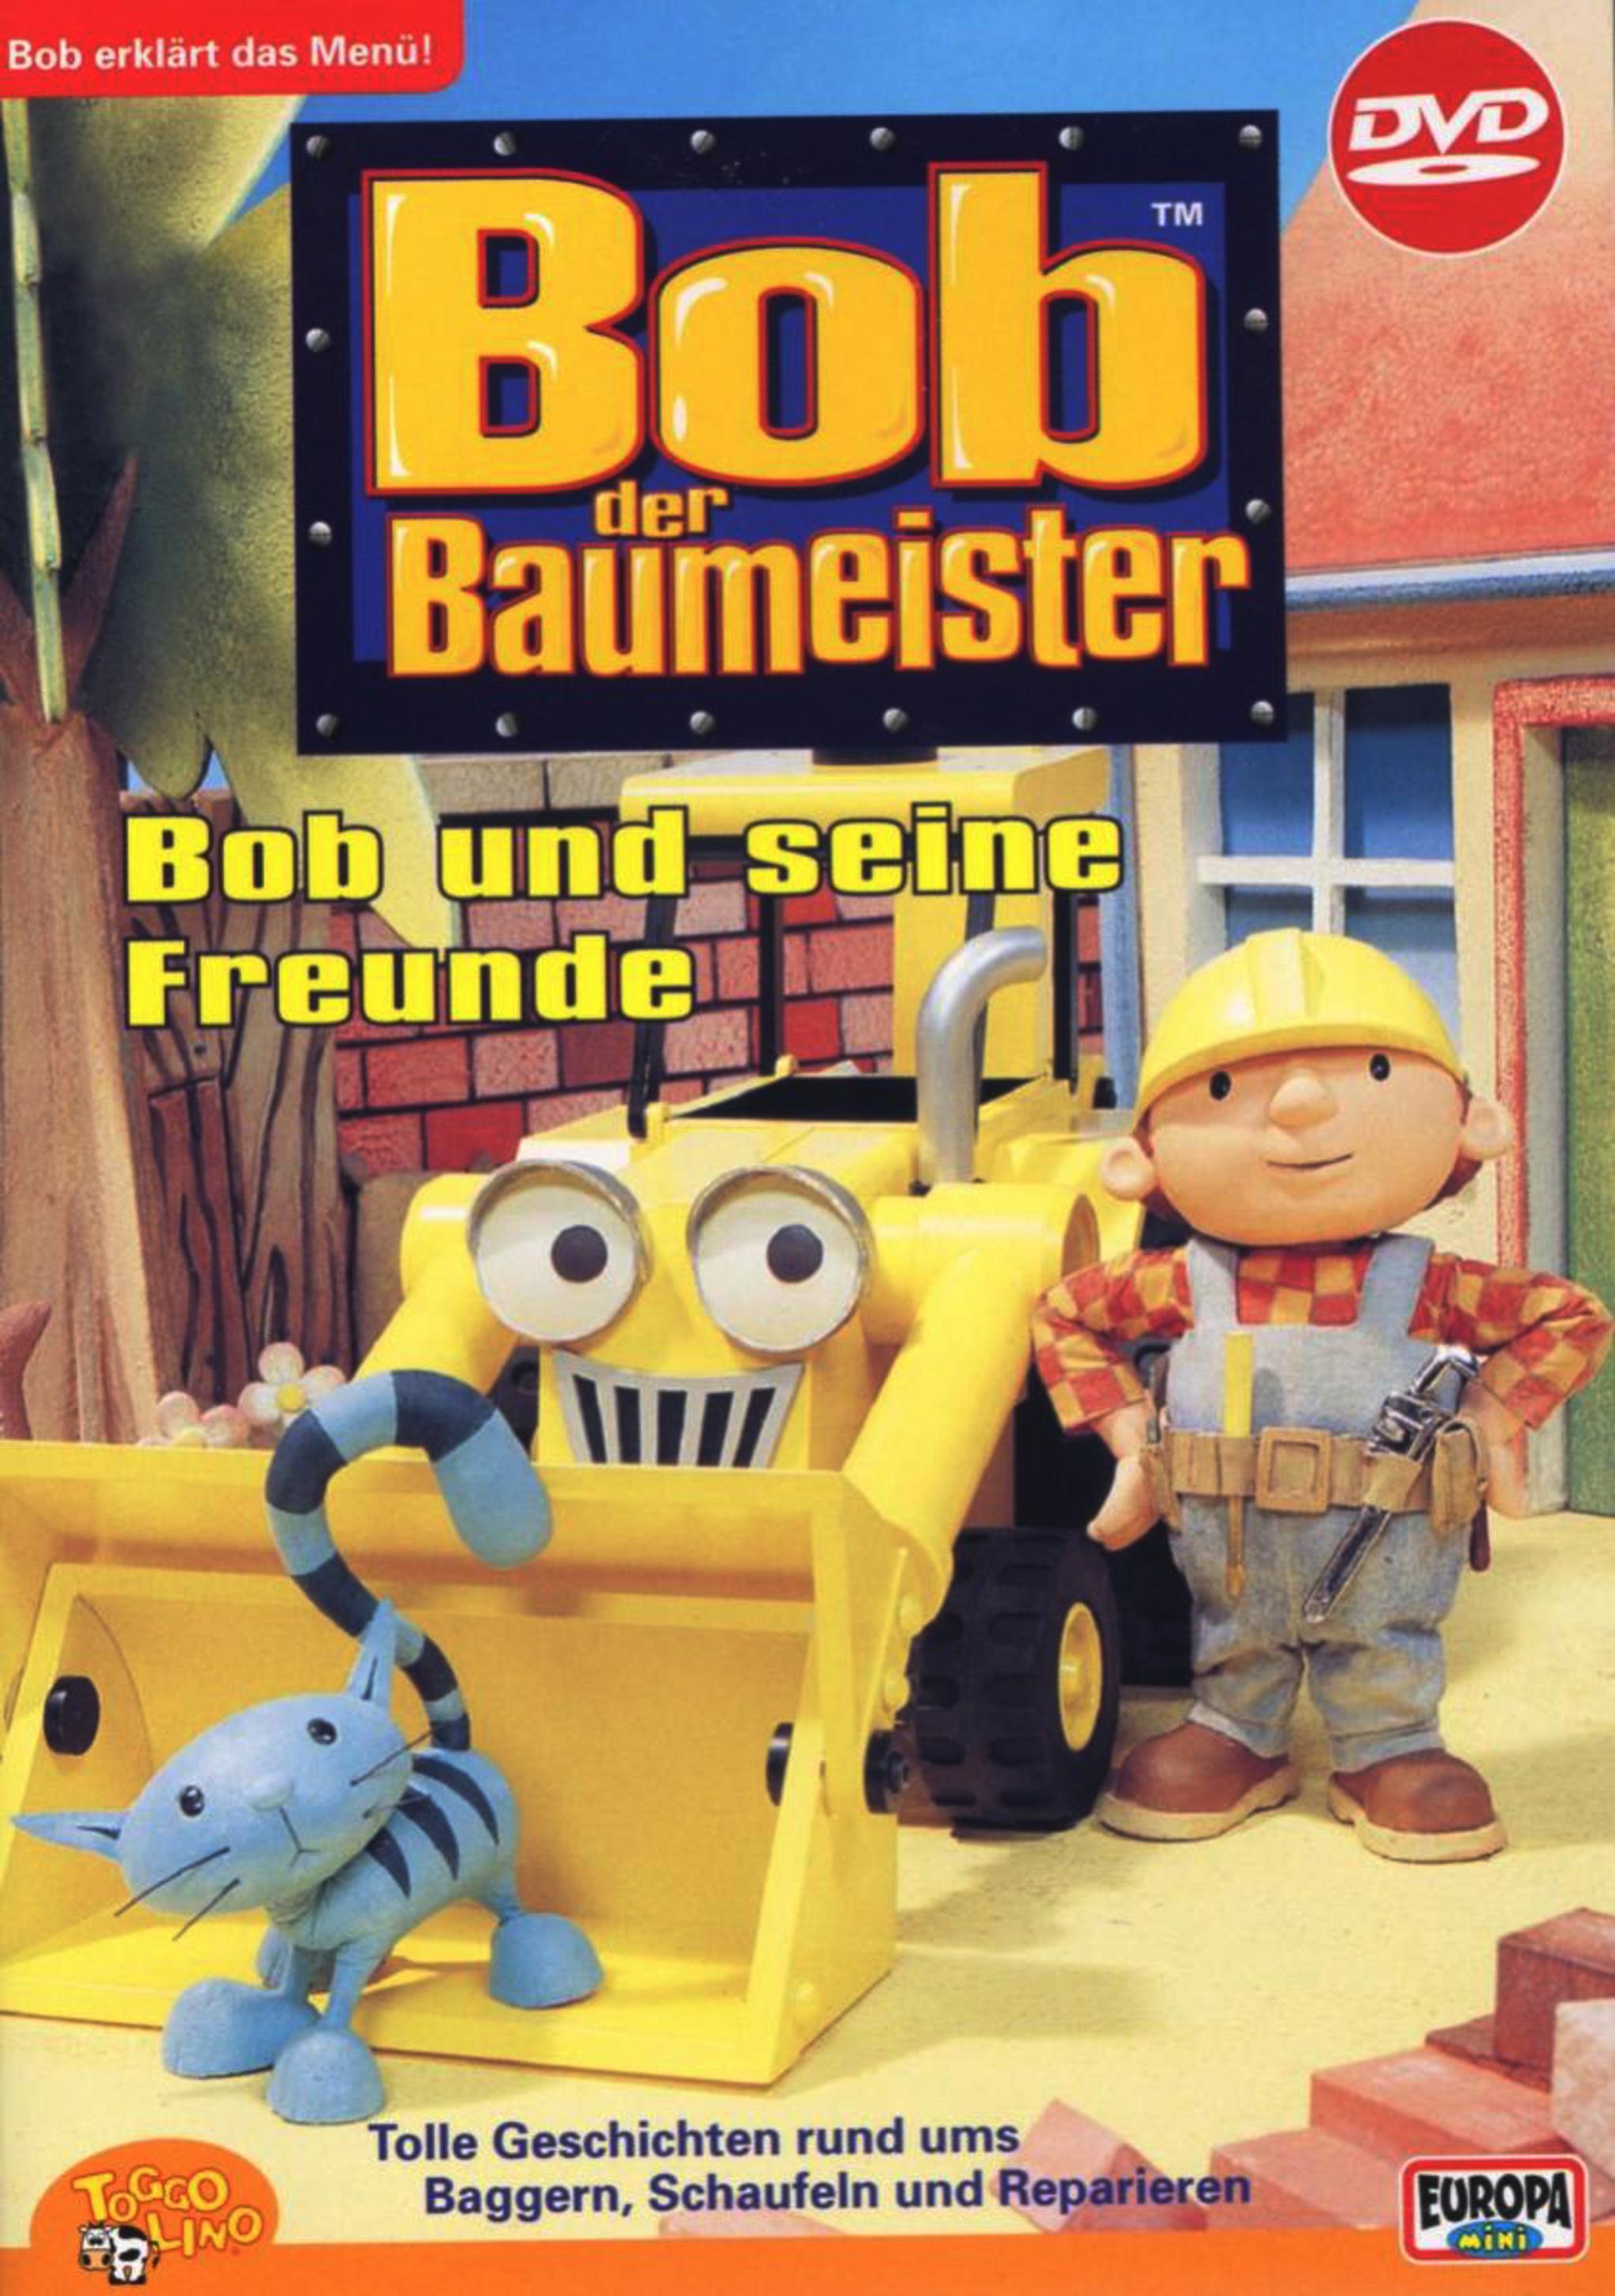  Bob der Baumeister ansehen